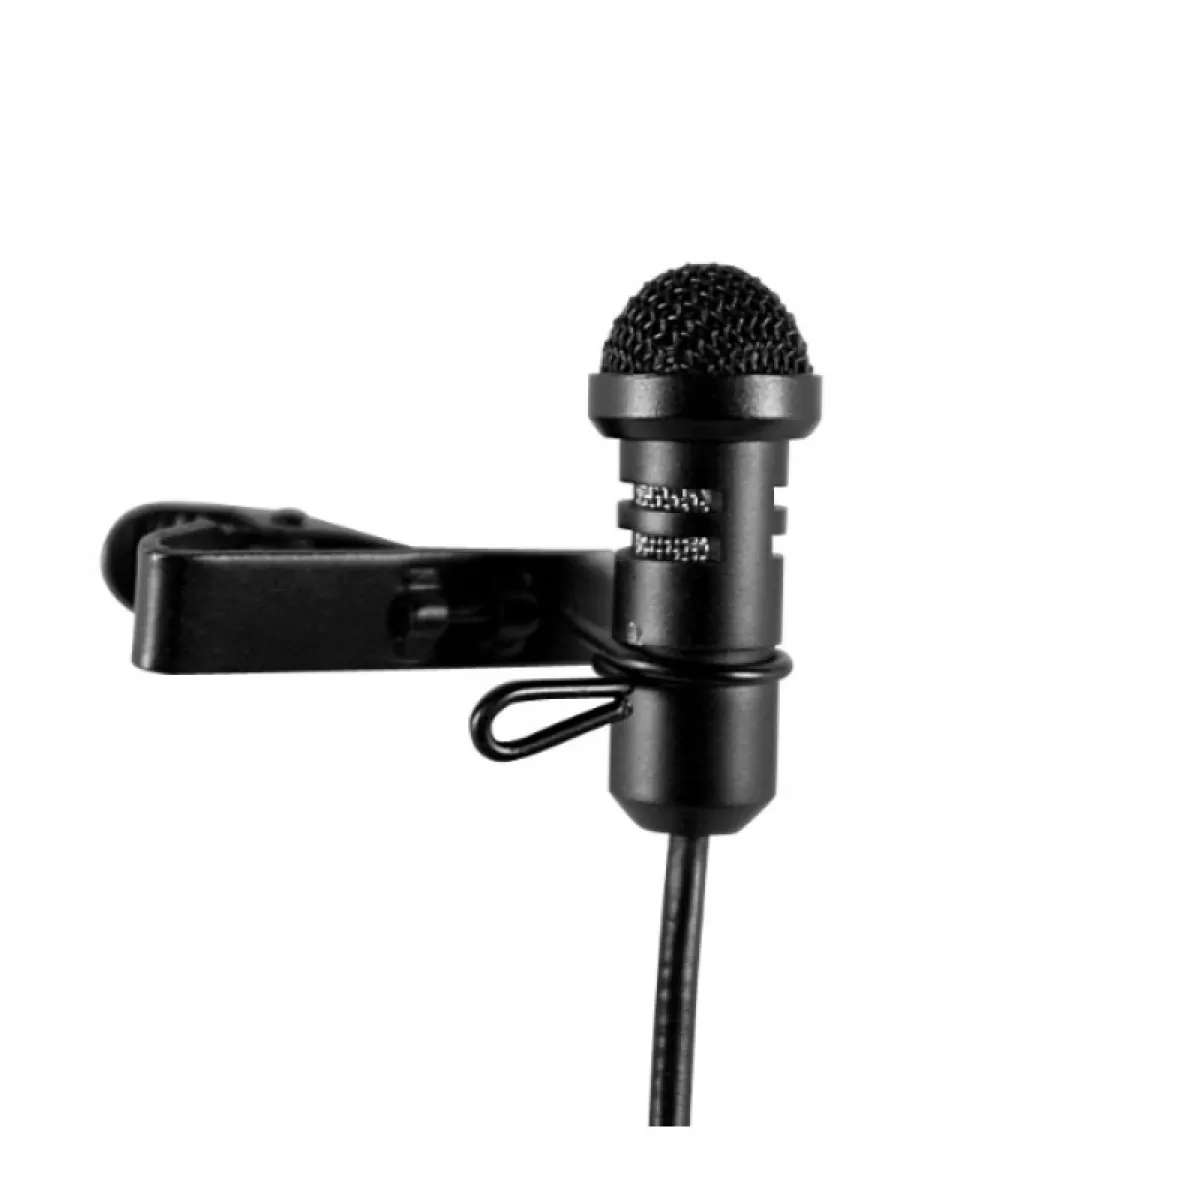 Петличный кардиоидный конденсаторный микрофон, Relacart LM-C460: купить в Москве